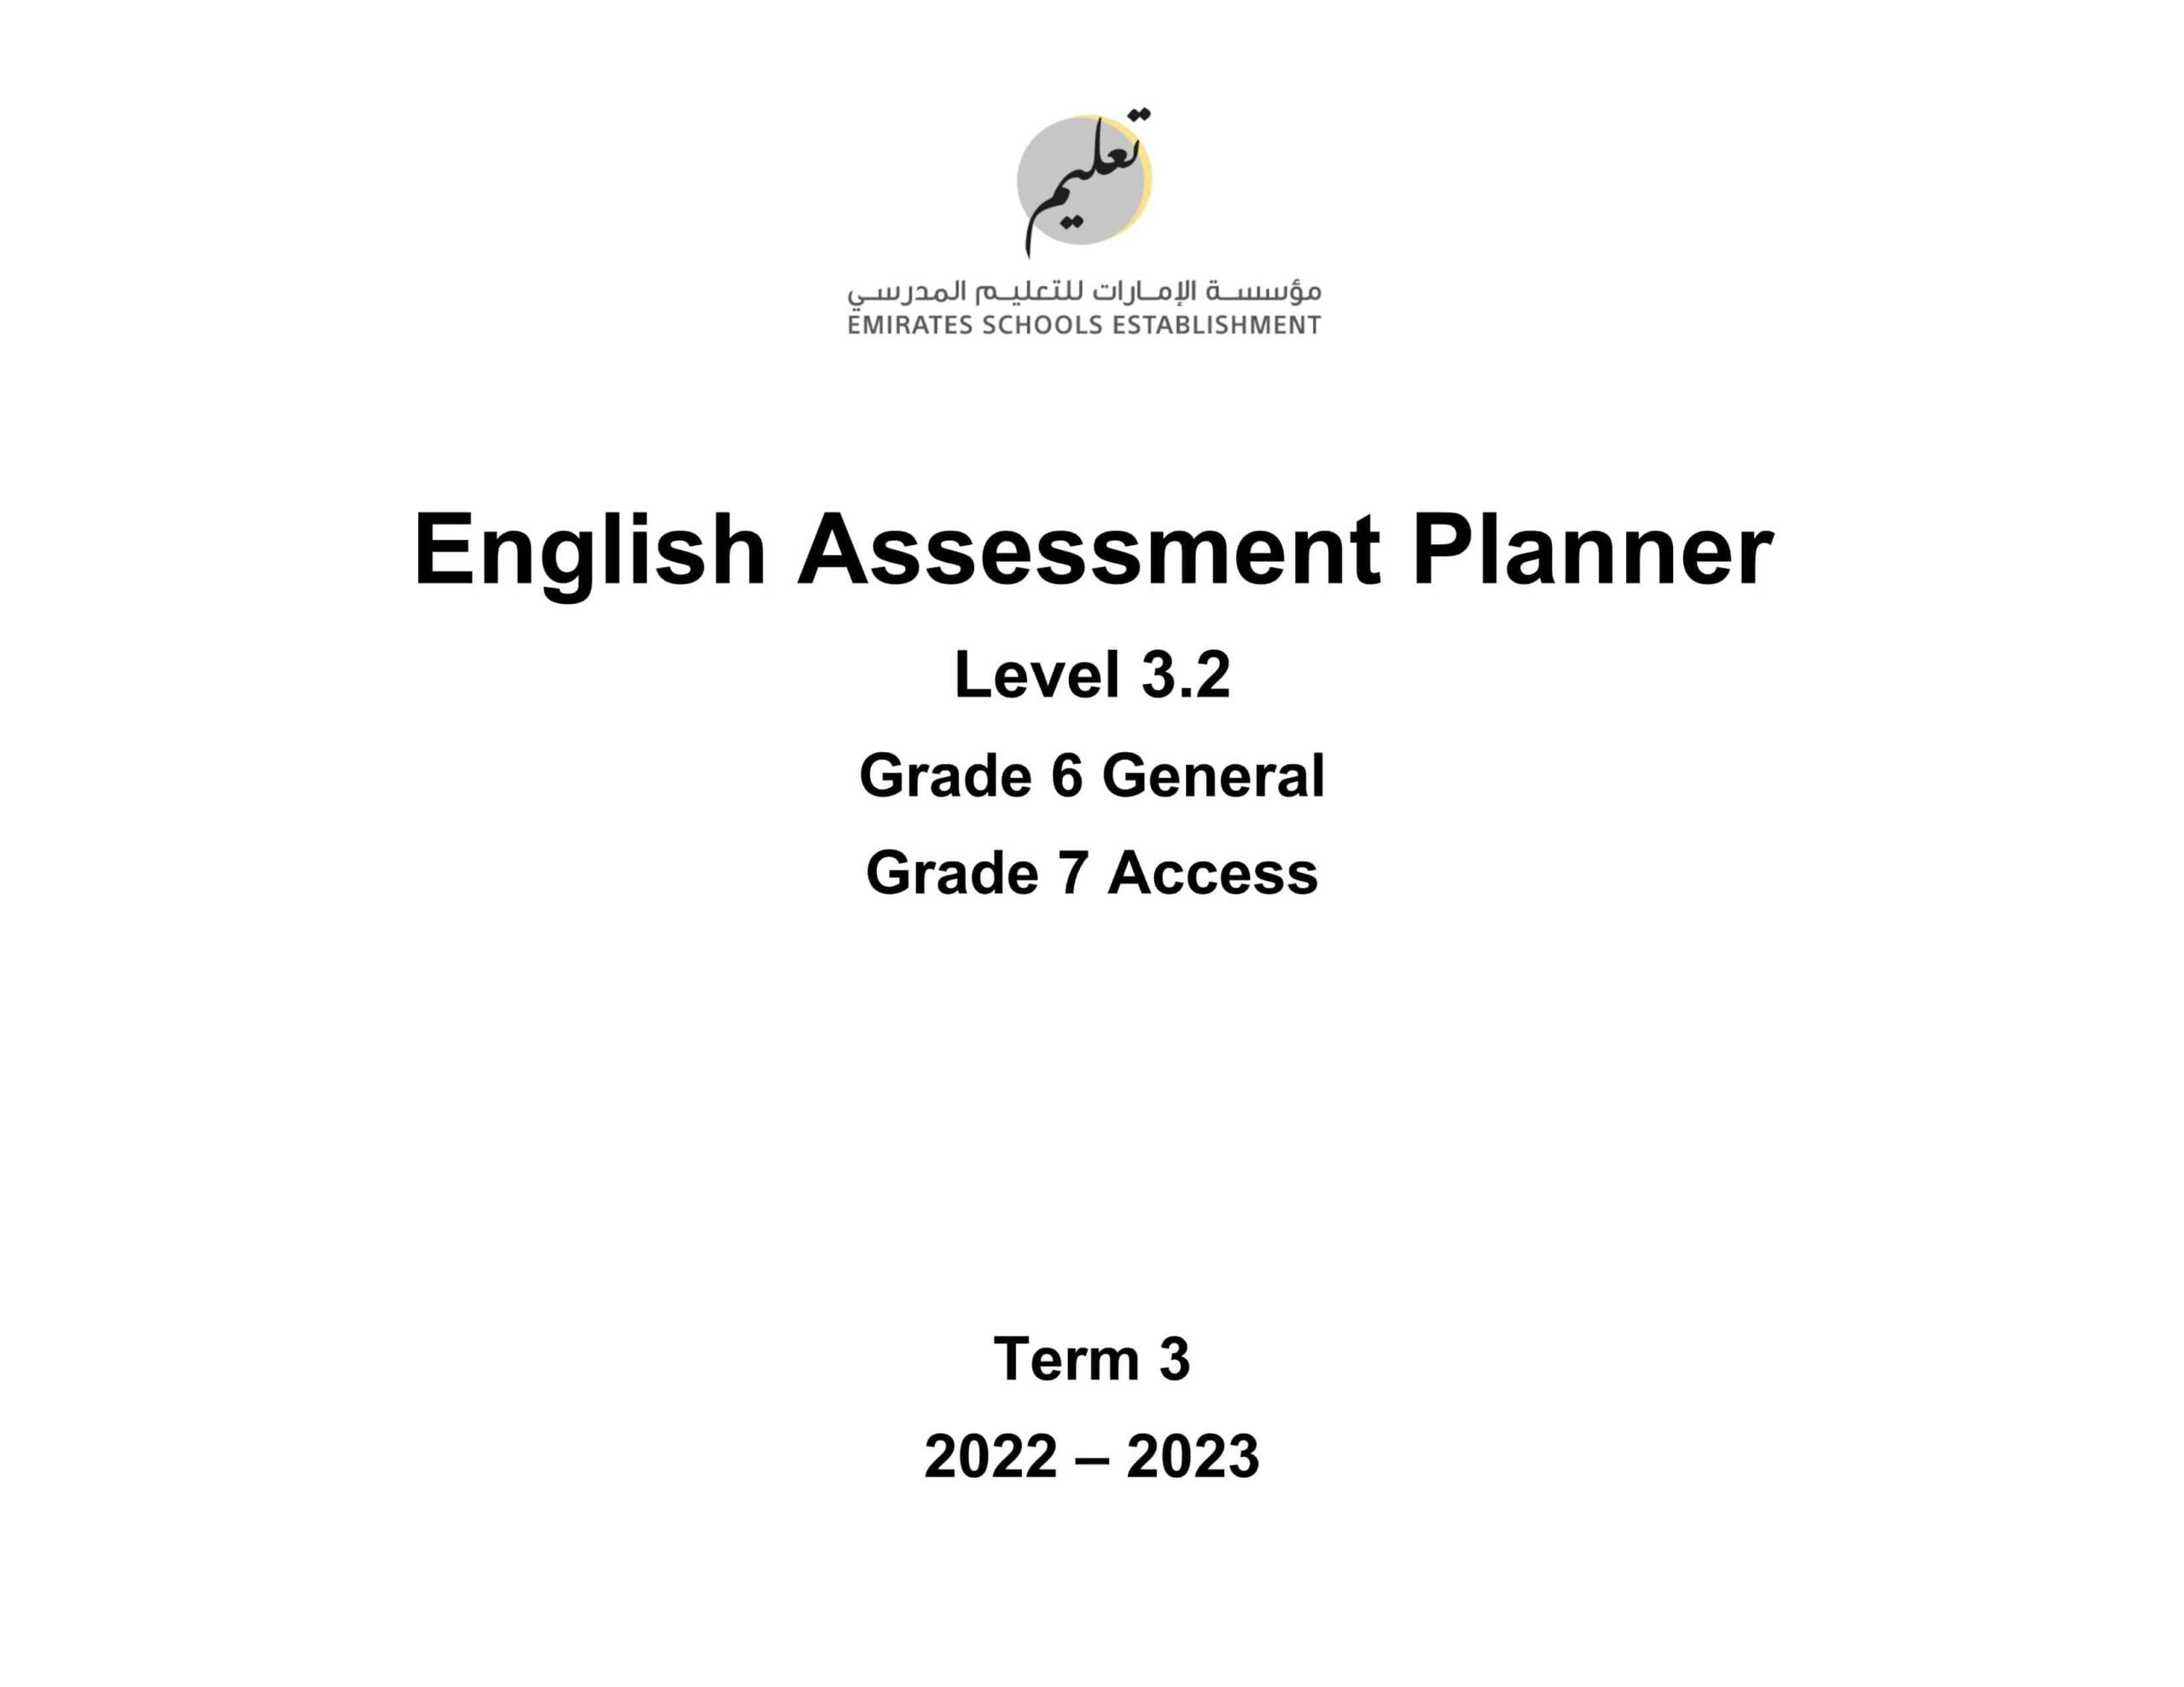 Assessment Planner اللغة الإنجليزية الصف السادس General والصف السابع Access الفصل الدراسي الثالث 2022-2023